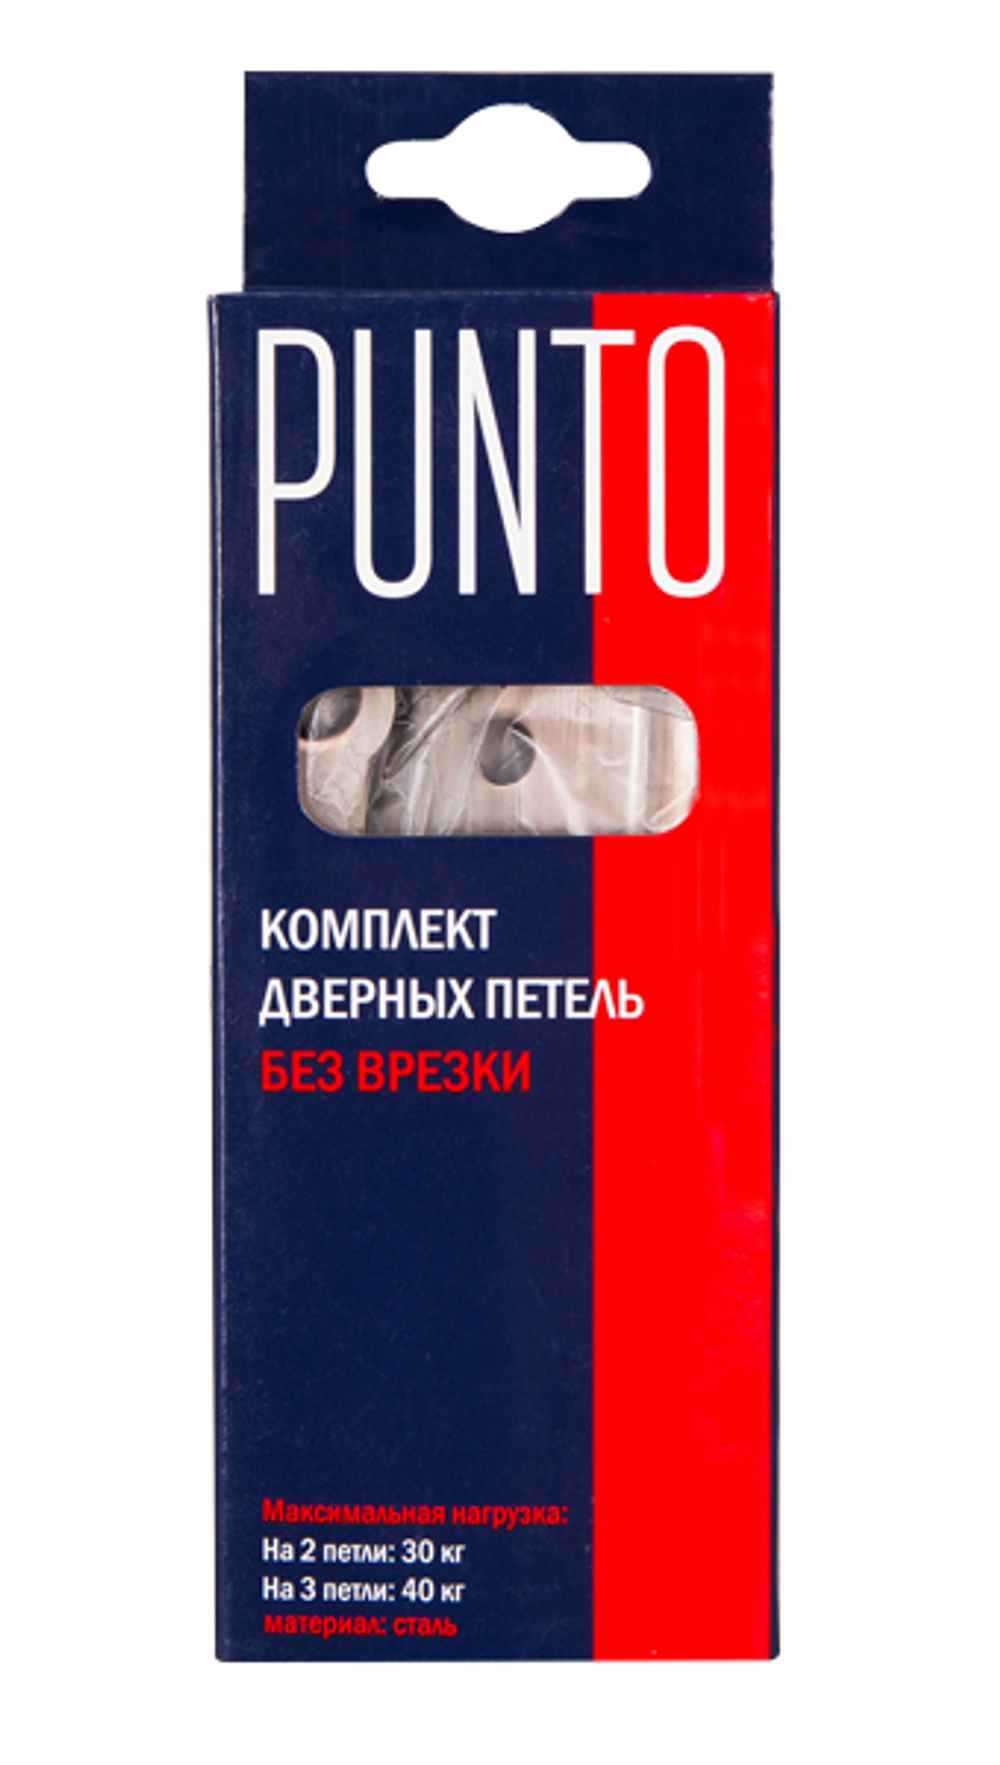 Петля универсальная Punto (Пунто) без врезки 200-2B 100x2,5 CF (кофе)